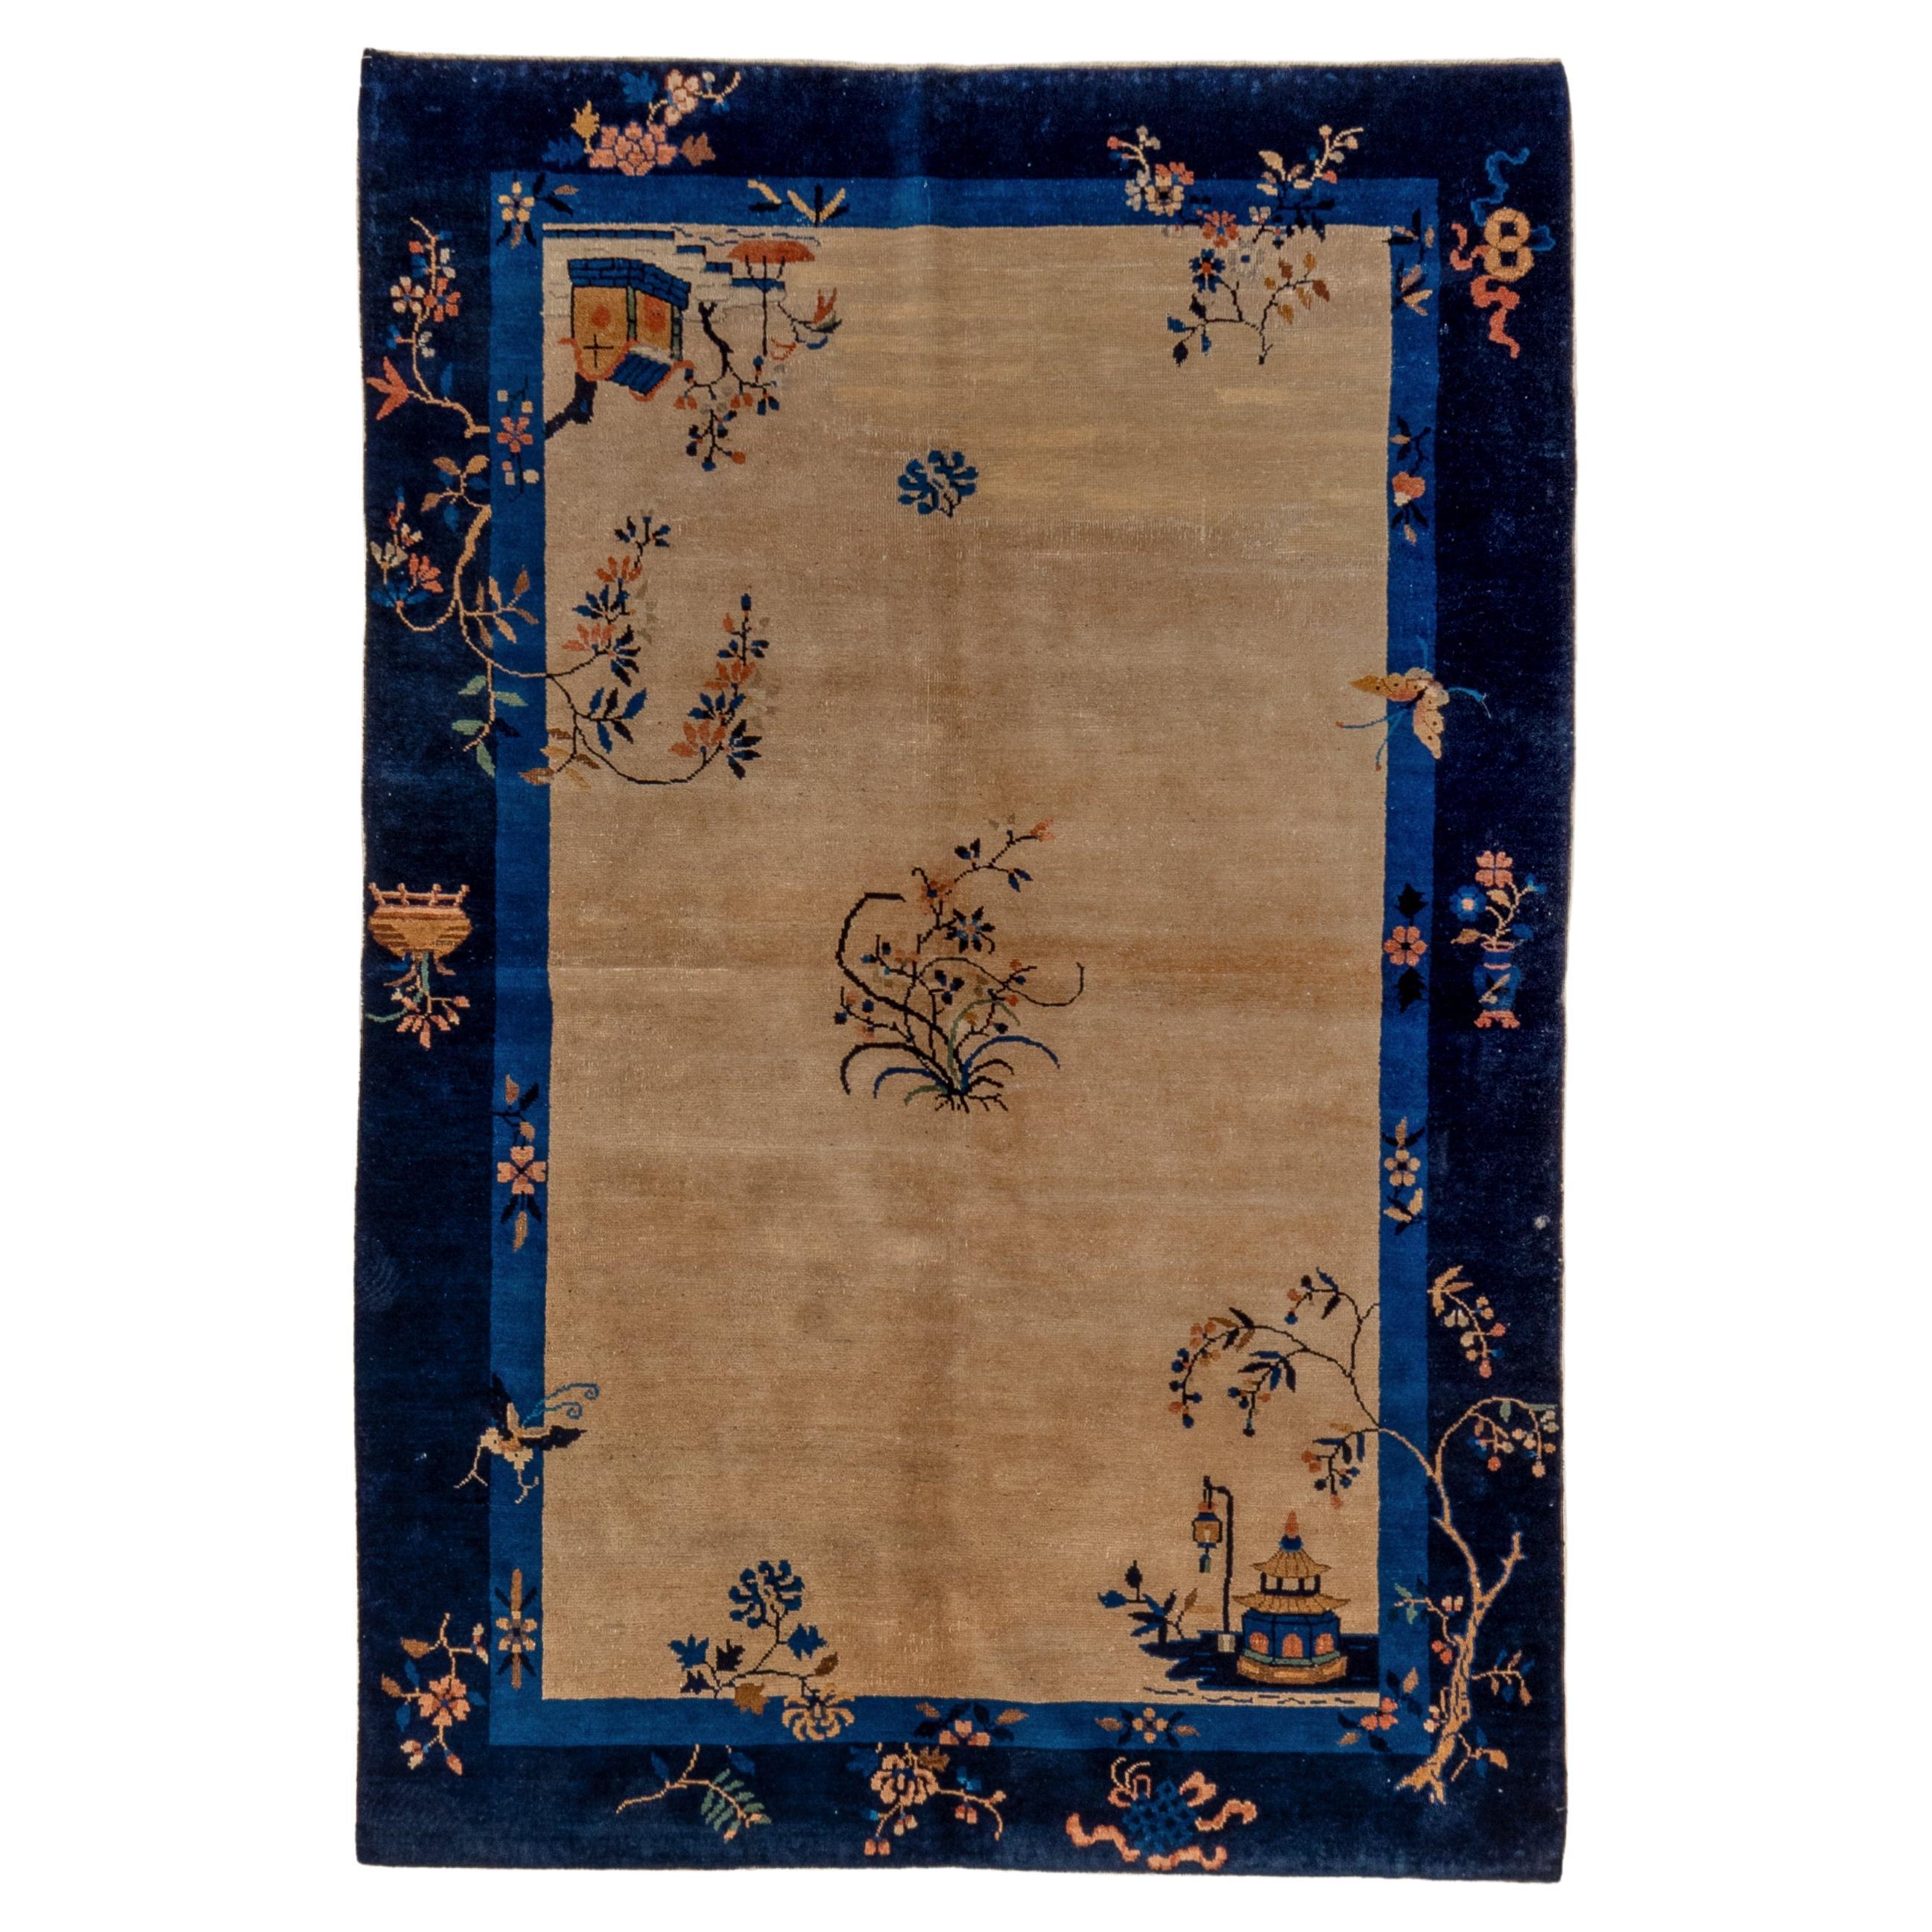 Chinesischer Art-Déco-Teppich aus der Zwischenkriegszeit mit Strohfeld und blauer Bordüre